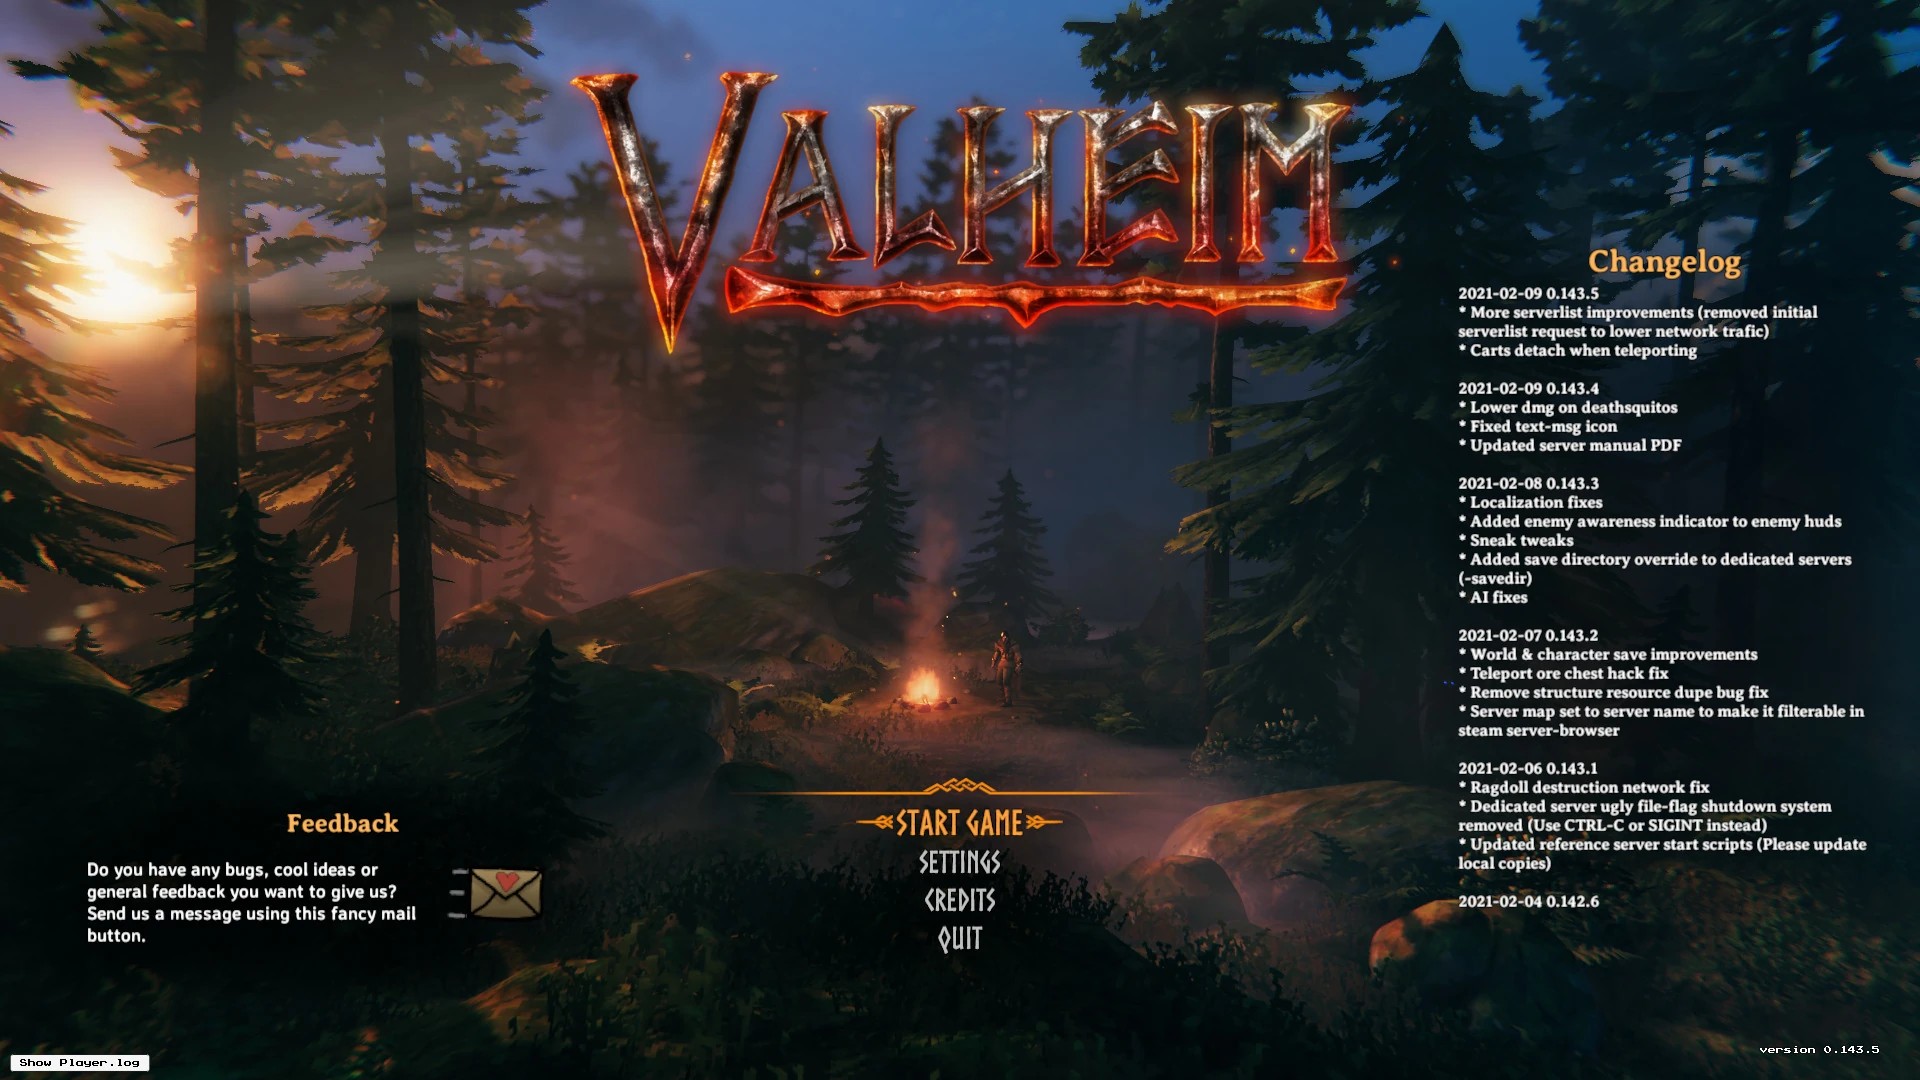 The Valheim main menu